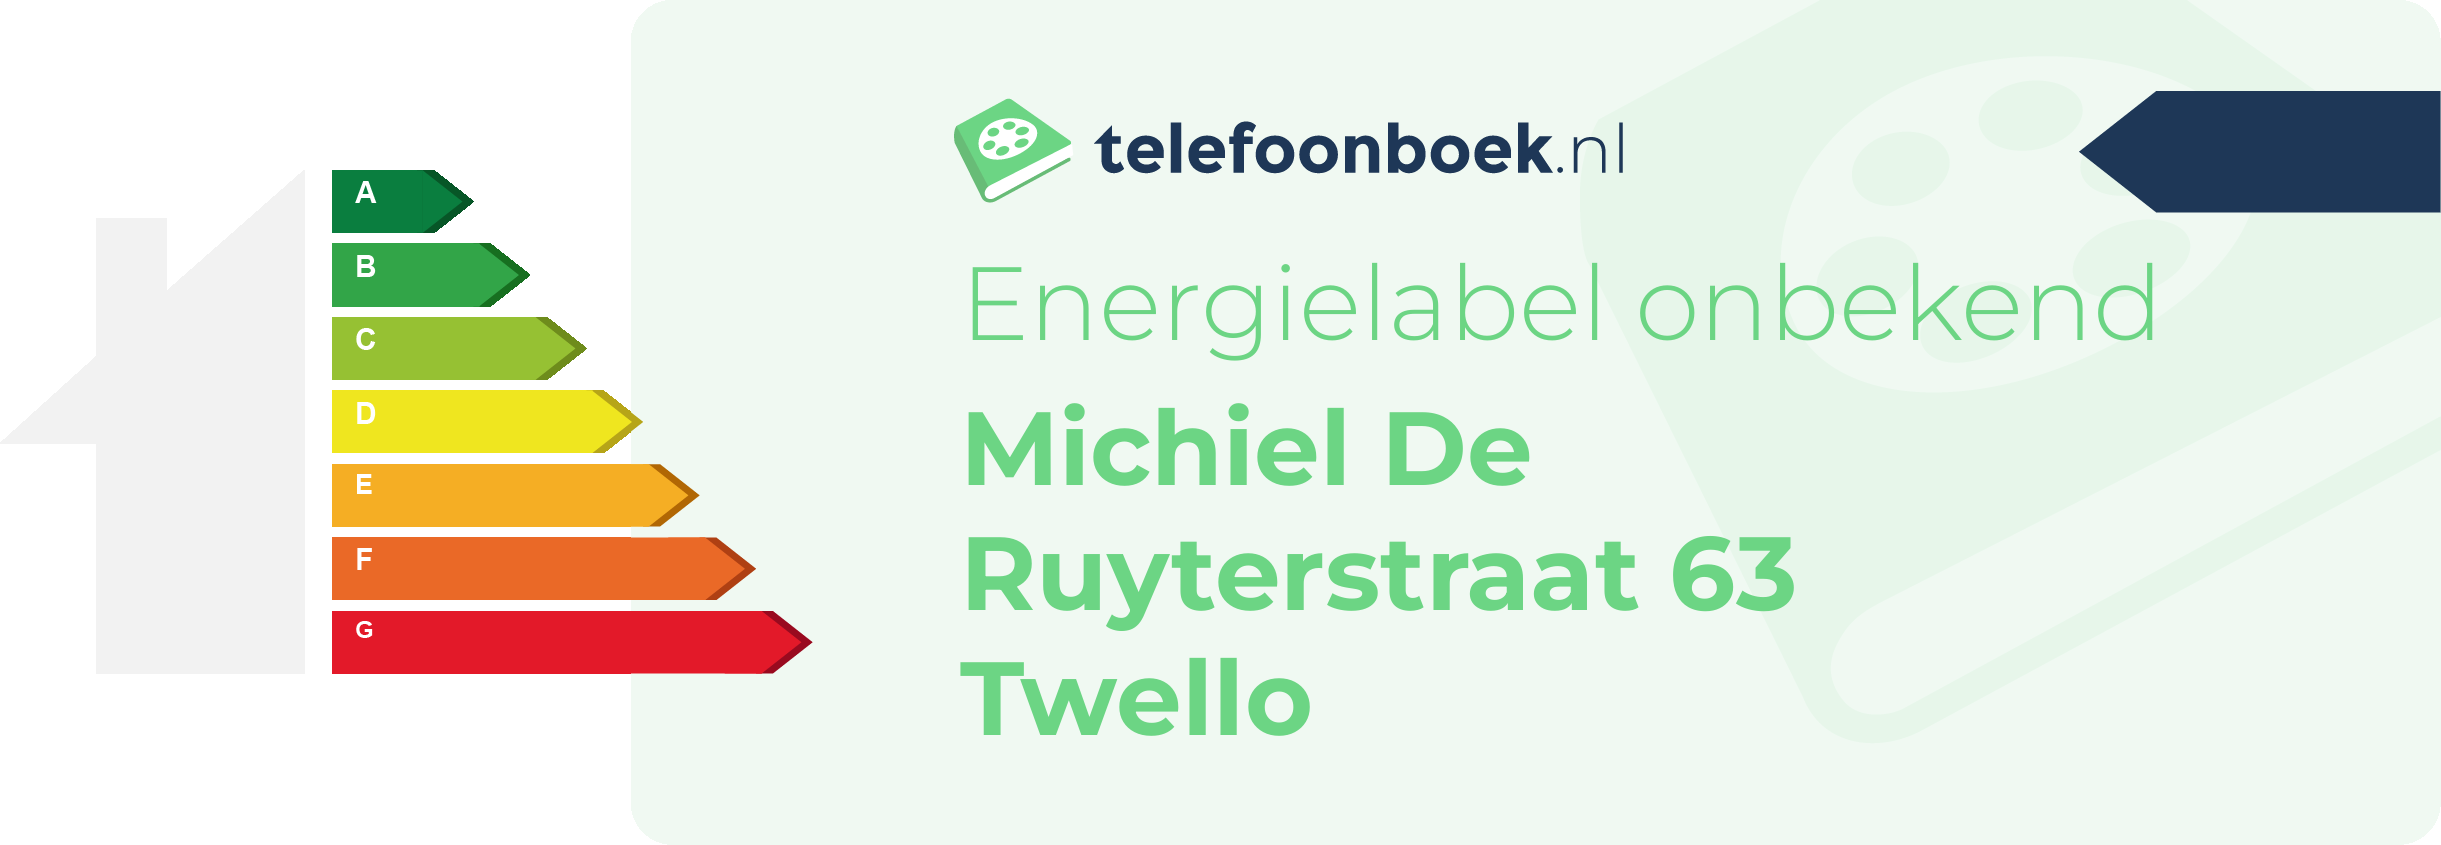 Energielabel Michiel De Ruyterstraat 63 Twello